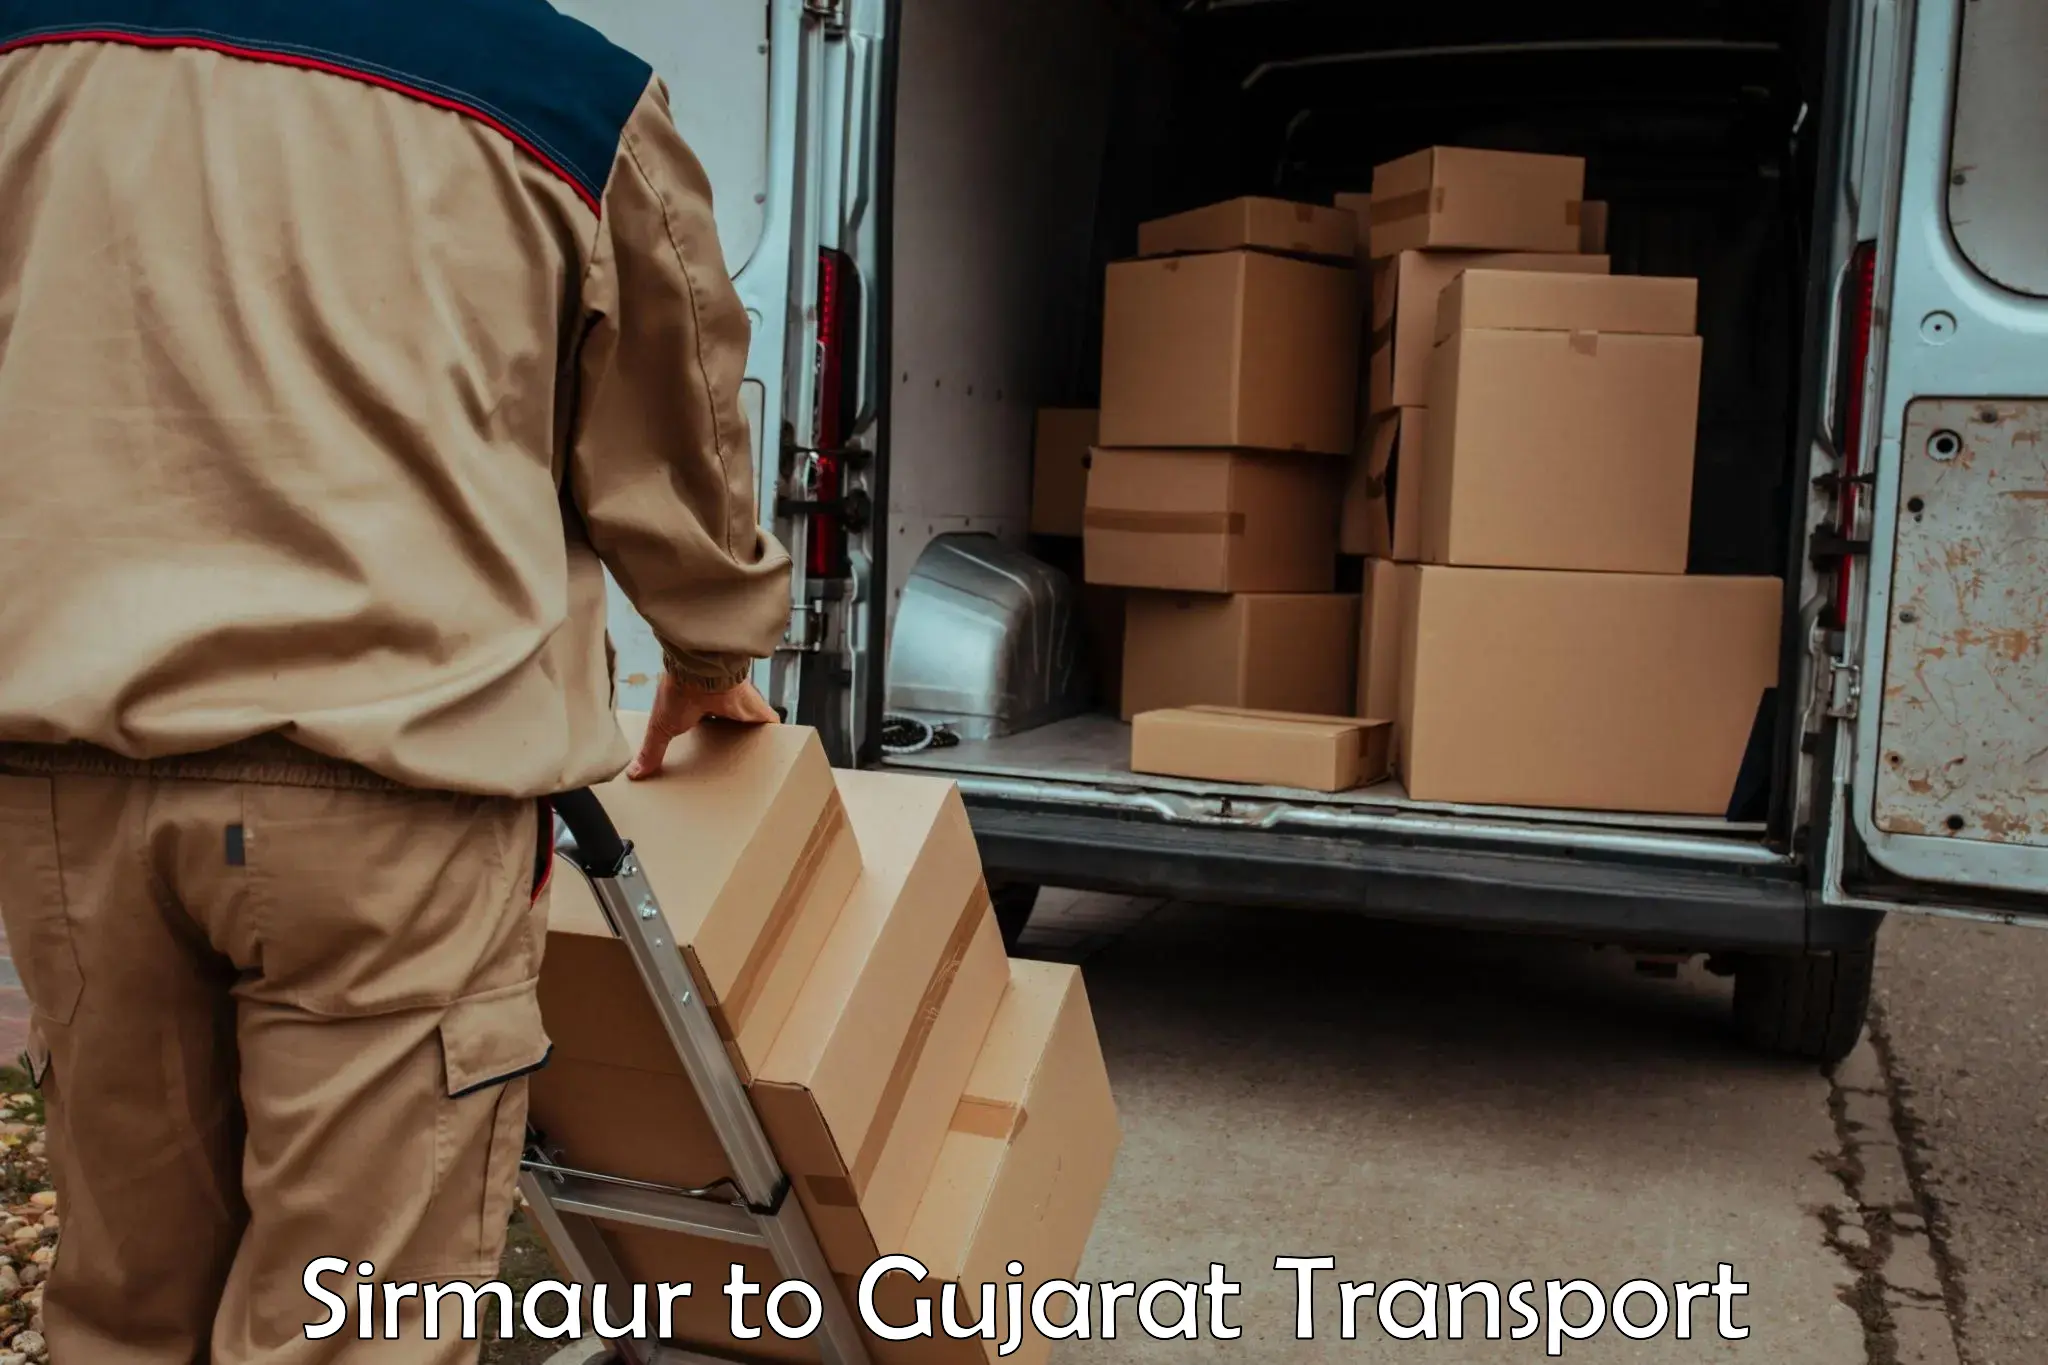 Pick up transport service Sirmaur to Vadodara